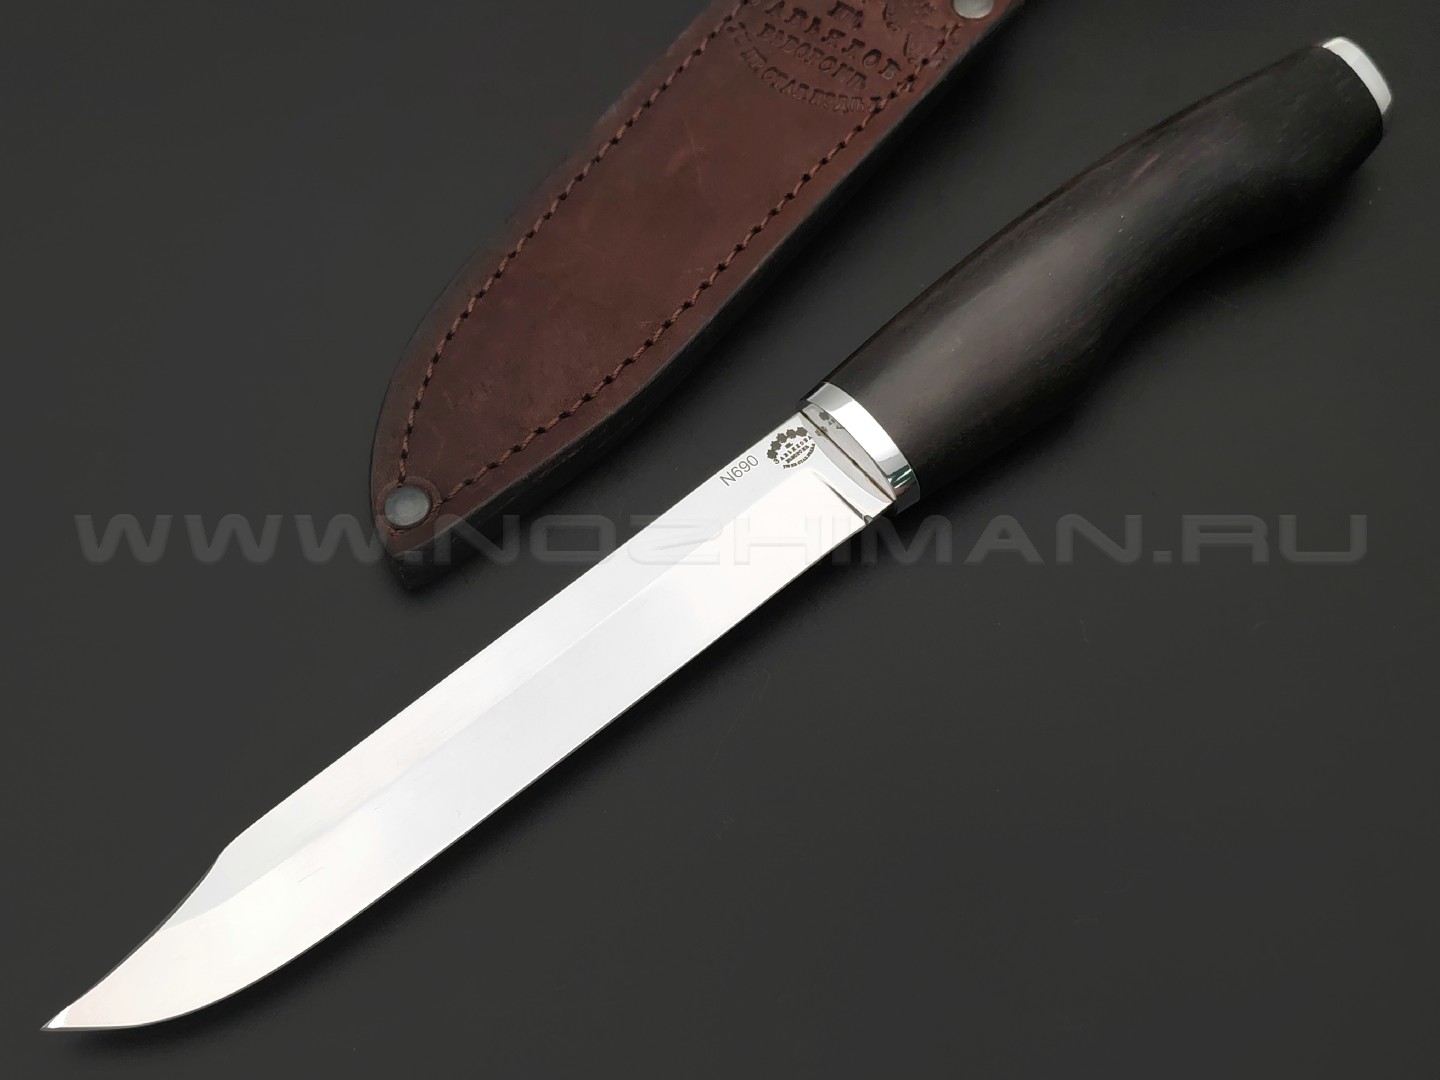 Товарищество Завьялова нож "Финка Завьялова" сталь N690, рукоять Дерево граб